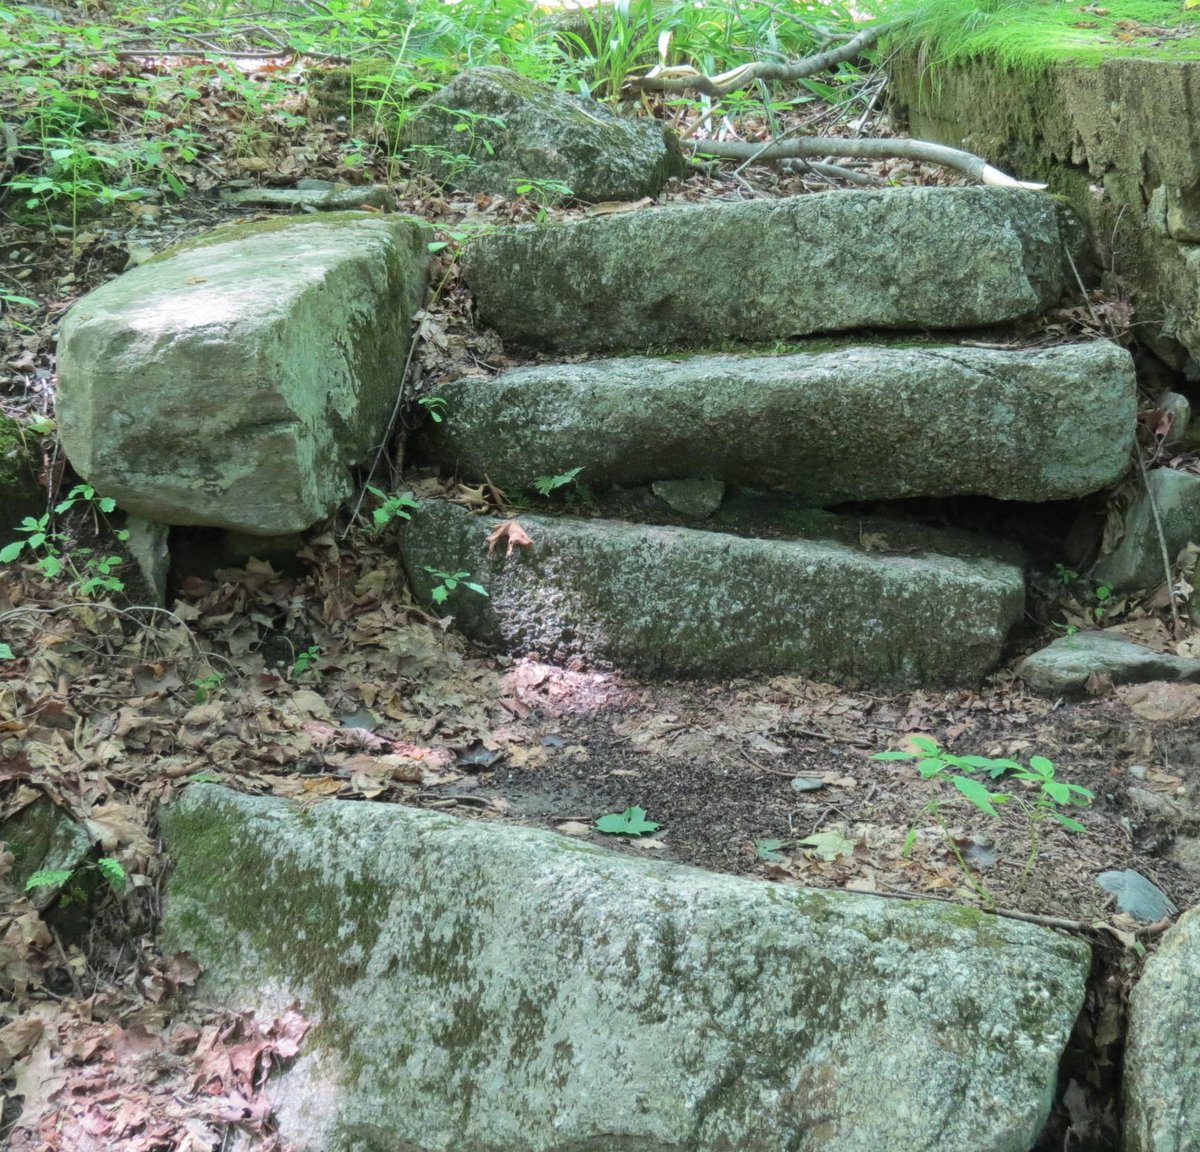 8. Stone Steps